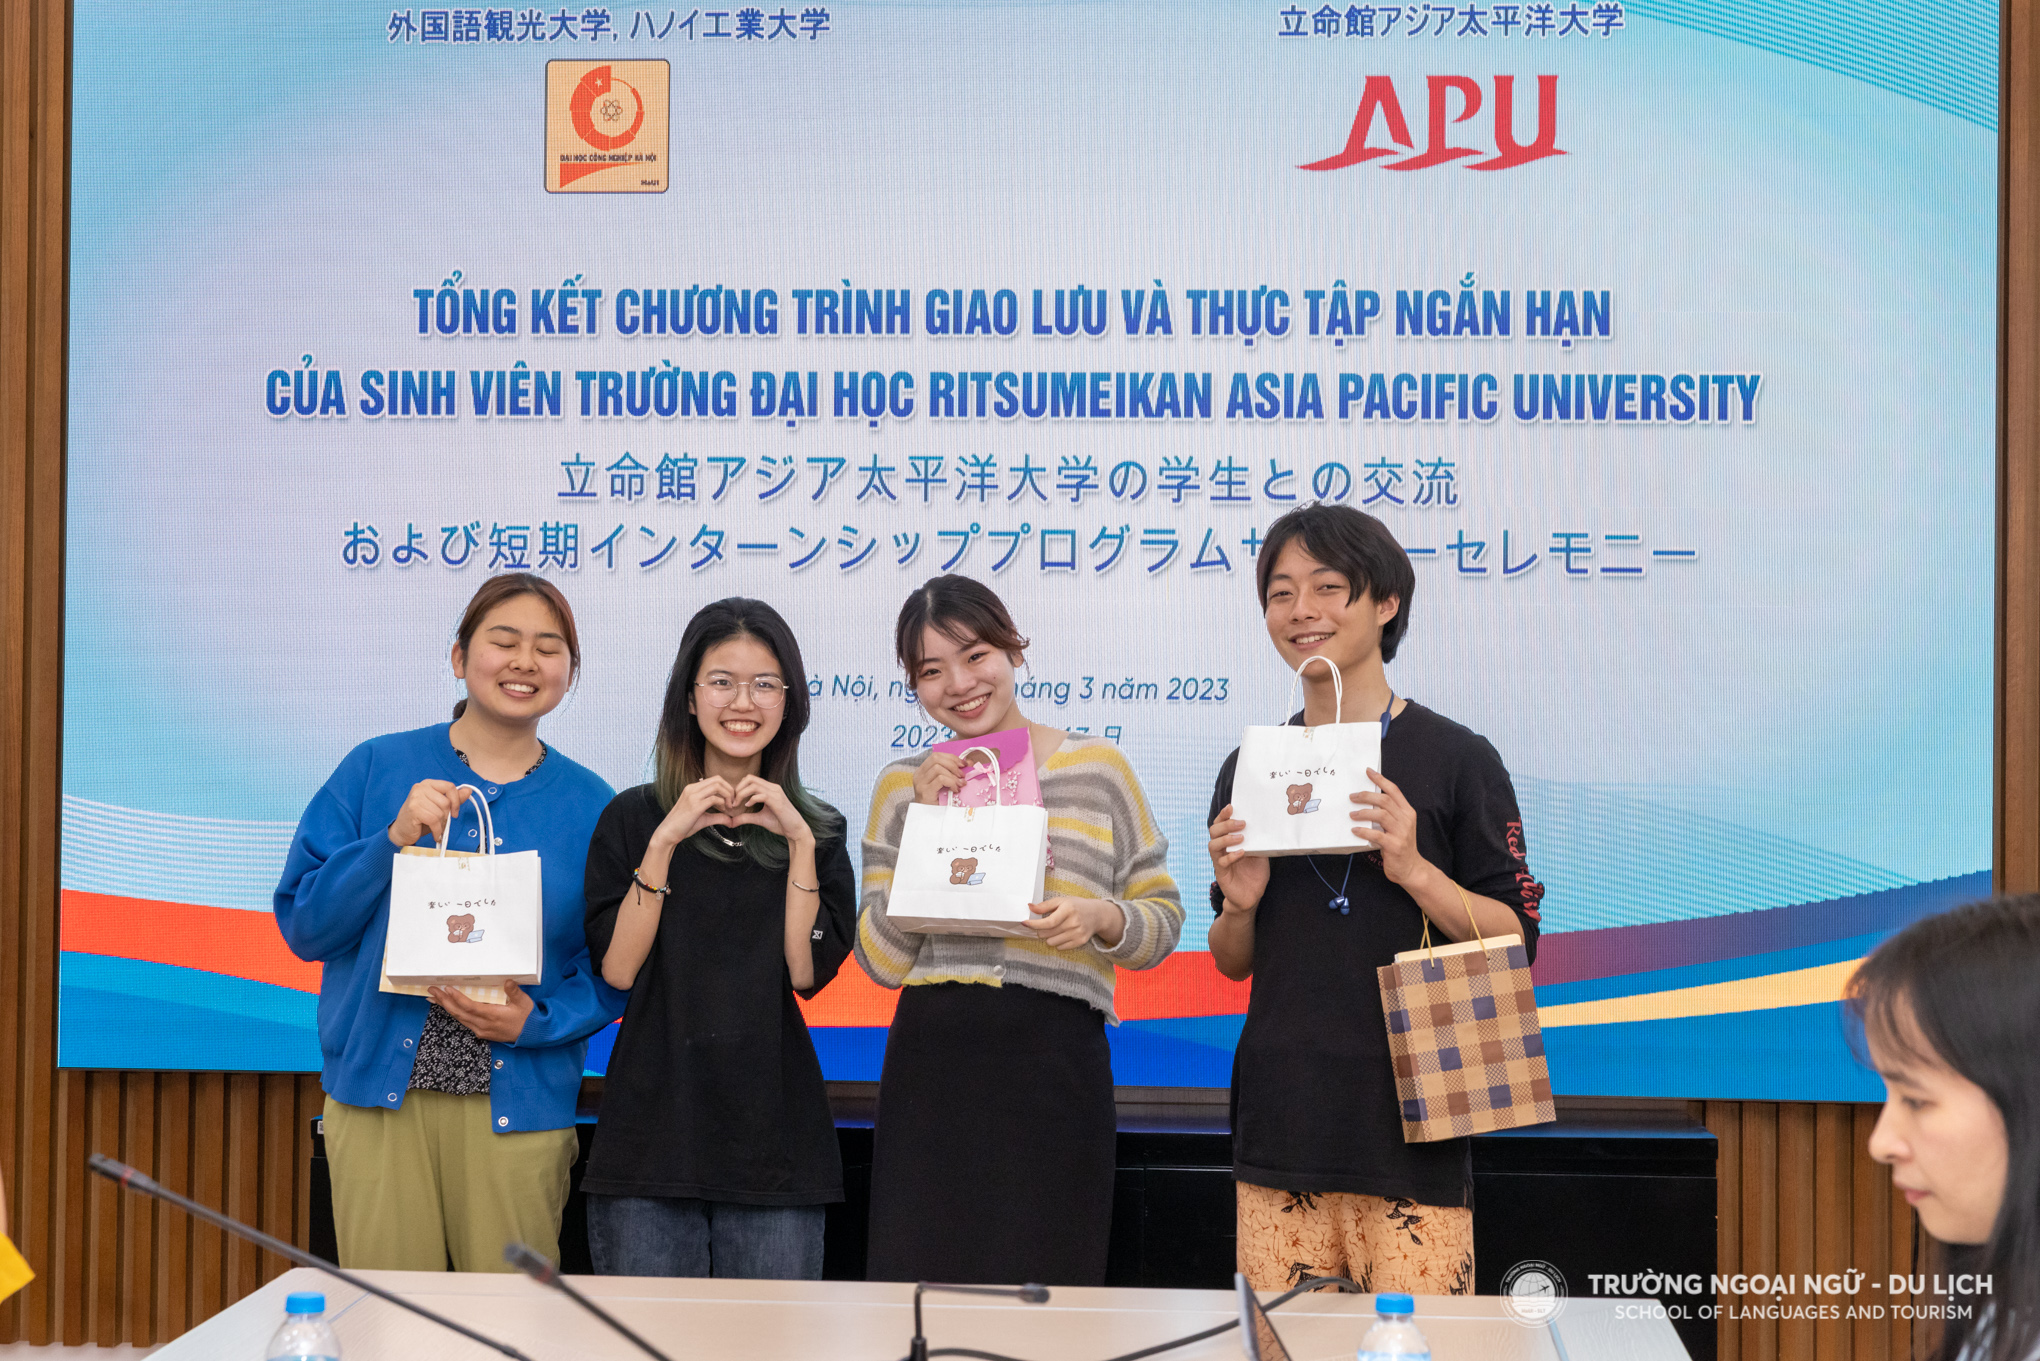 Sinh viên Đại học Ritsumeikan Châu Á Thái Bình Dương (APU) Nhật Bản kết thúc khóa thực tập ngắn hạn tại Trường Ngoại ngữ - Du lịch